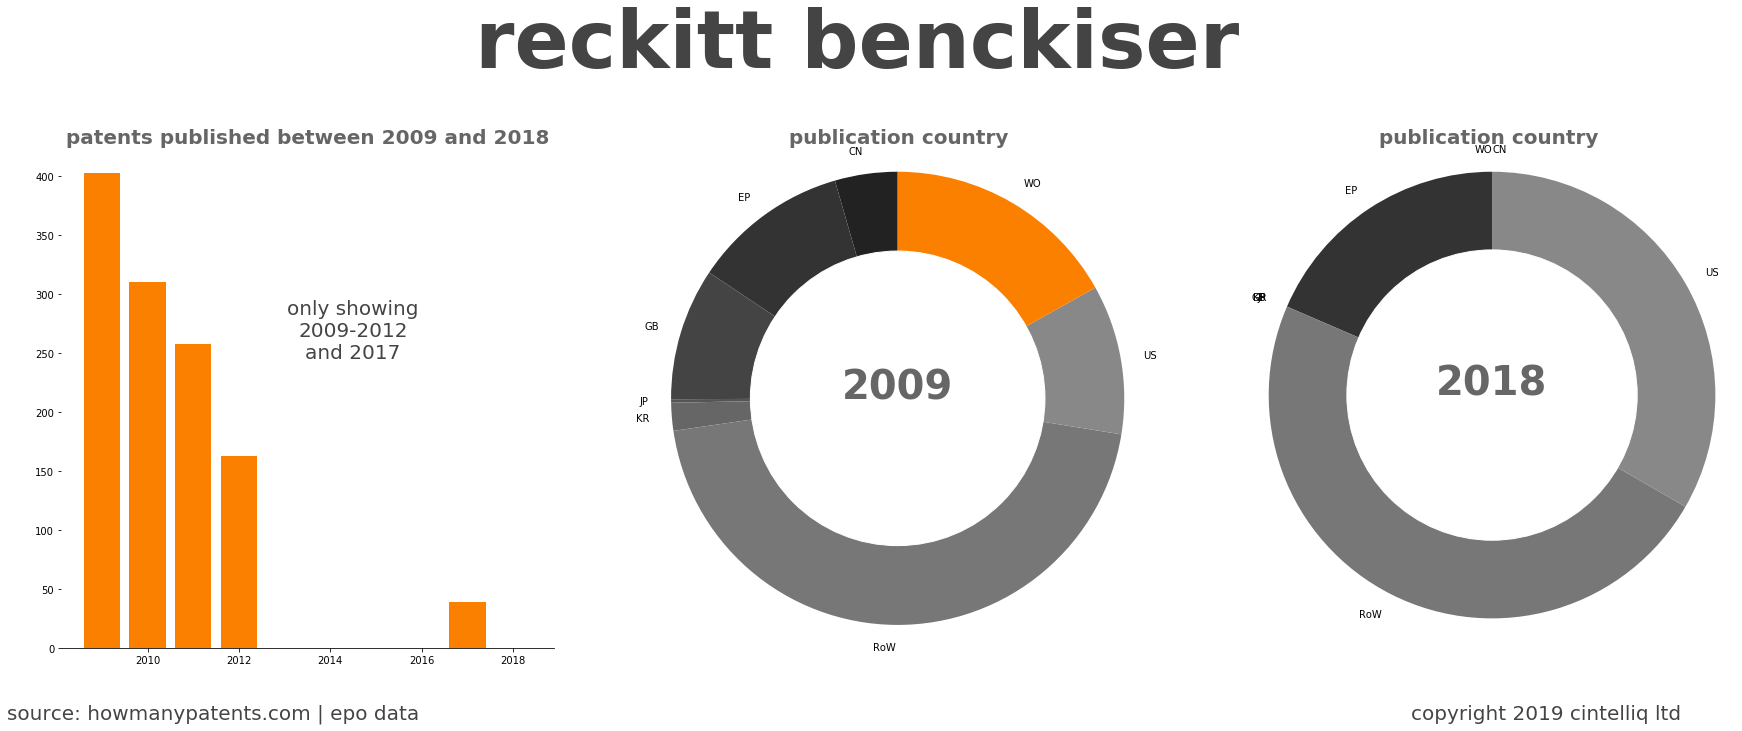 summary of patents for Reckitt Benckiser 